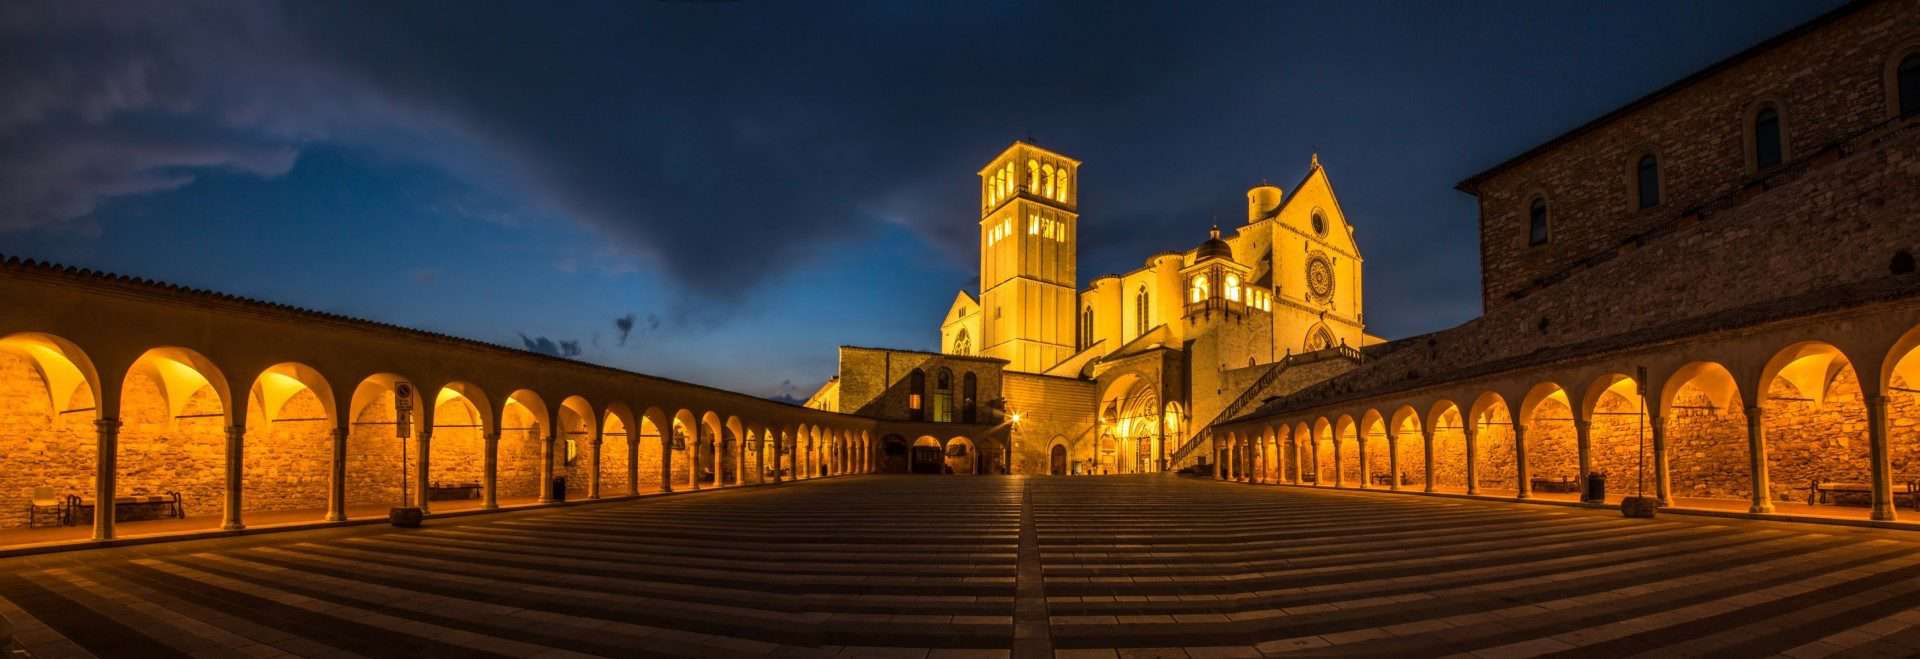 Vacanze a Assisi: Consigli fotografici sul suggestivo borgo umbro